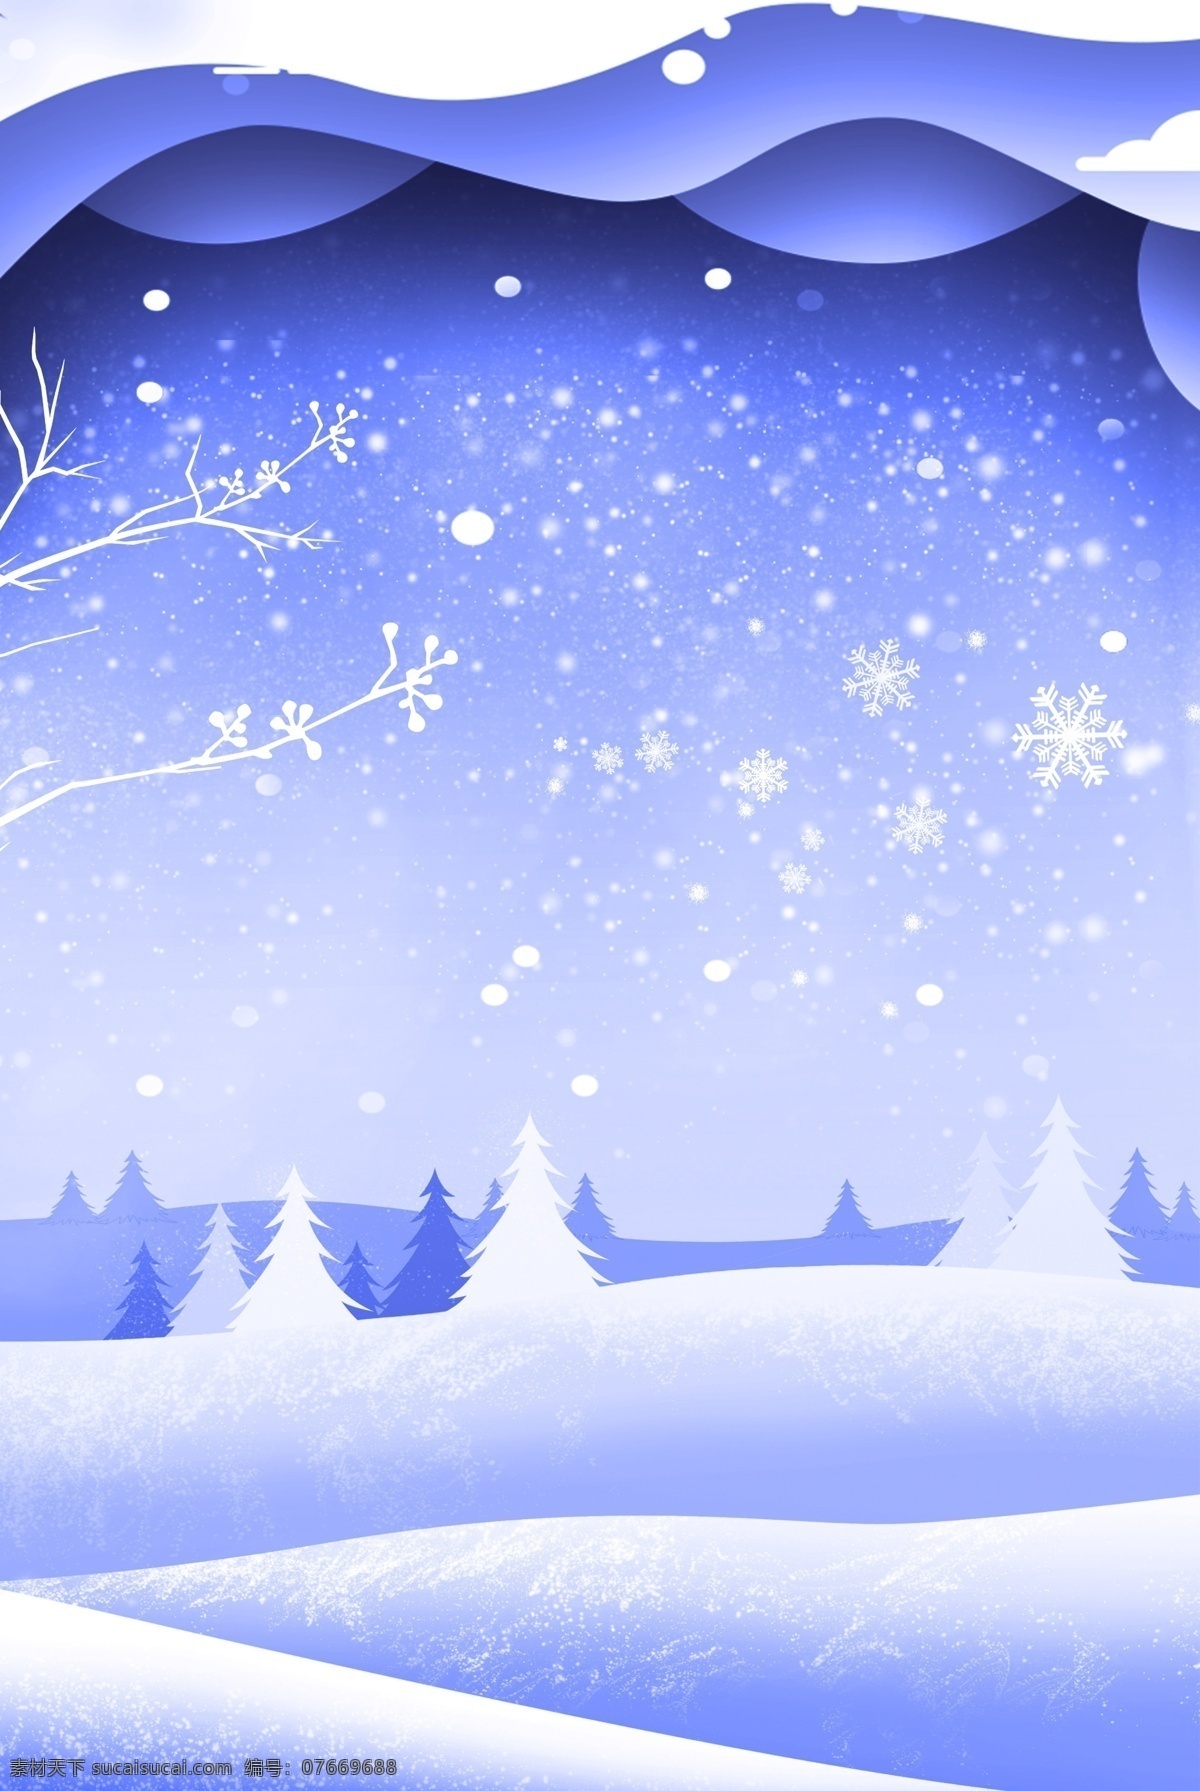 二十四节气 大寒 大雪 雪景 海报 传统 传统大雪 节气 冬季 开心 温暖 愉悦 幸福